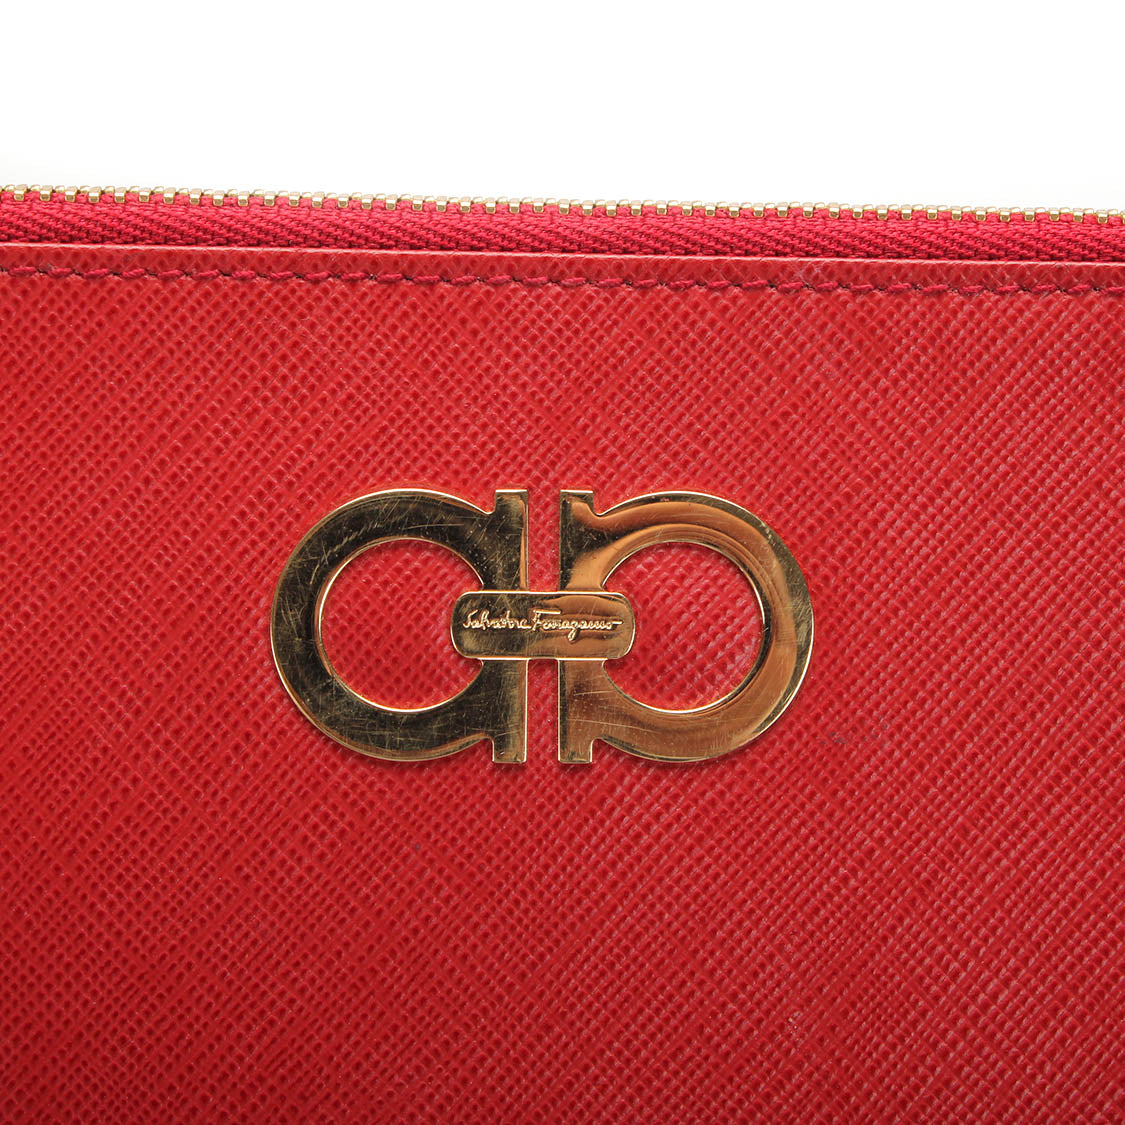 Gancini Leather Wristlet Clutch Bag